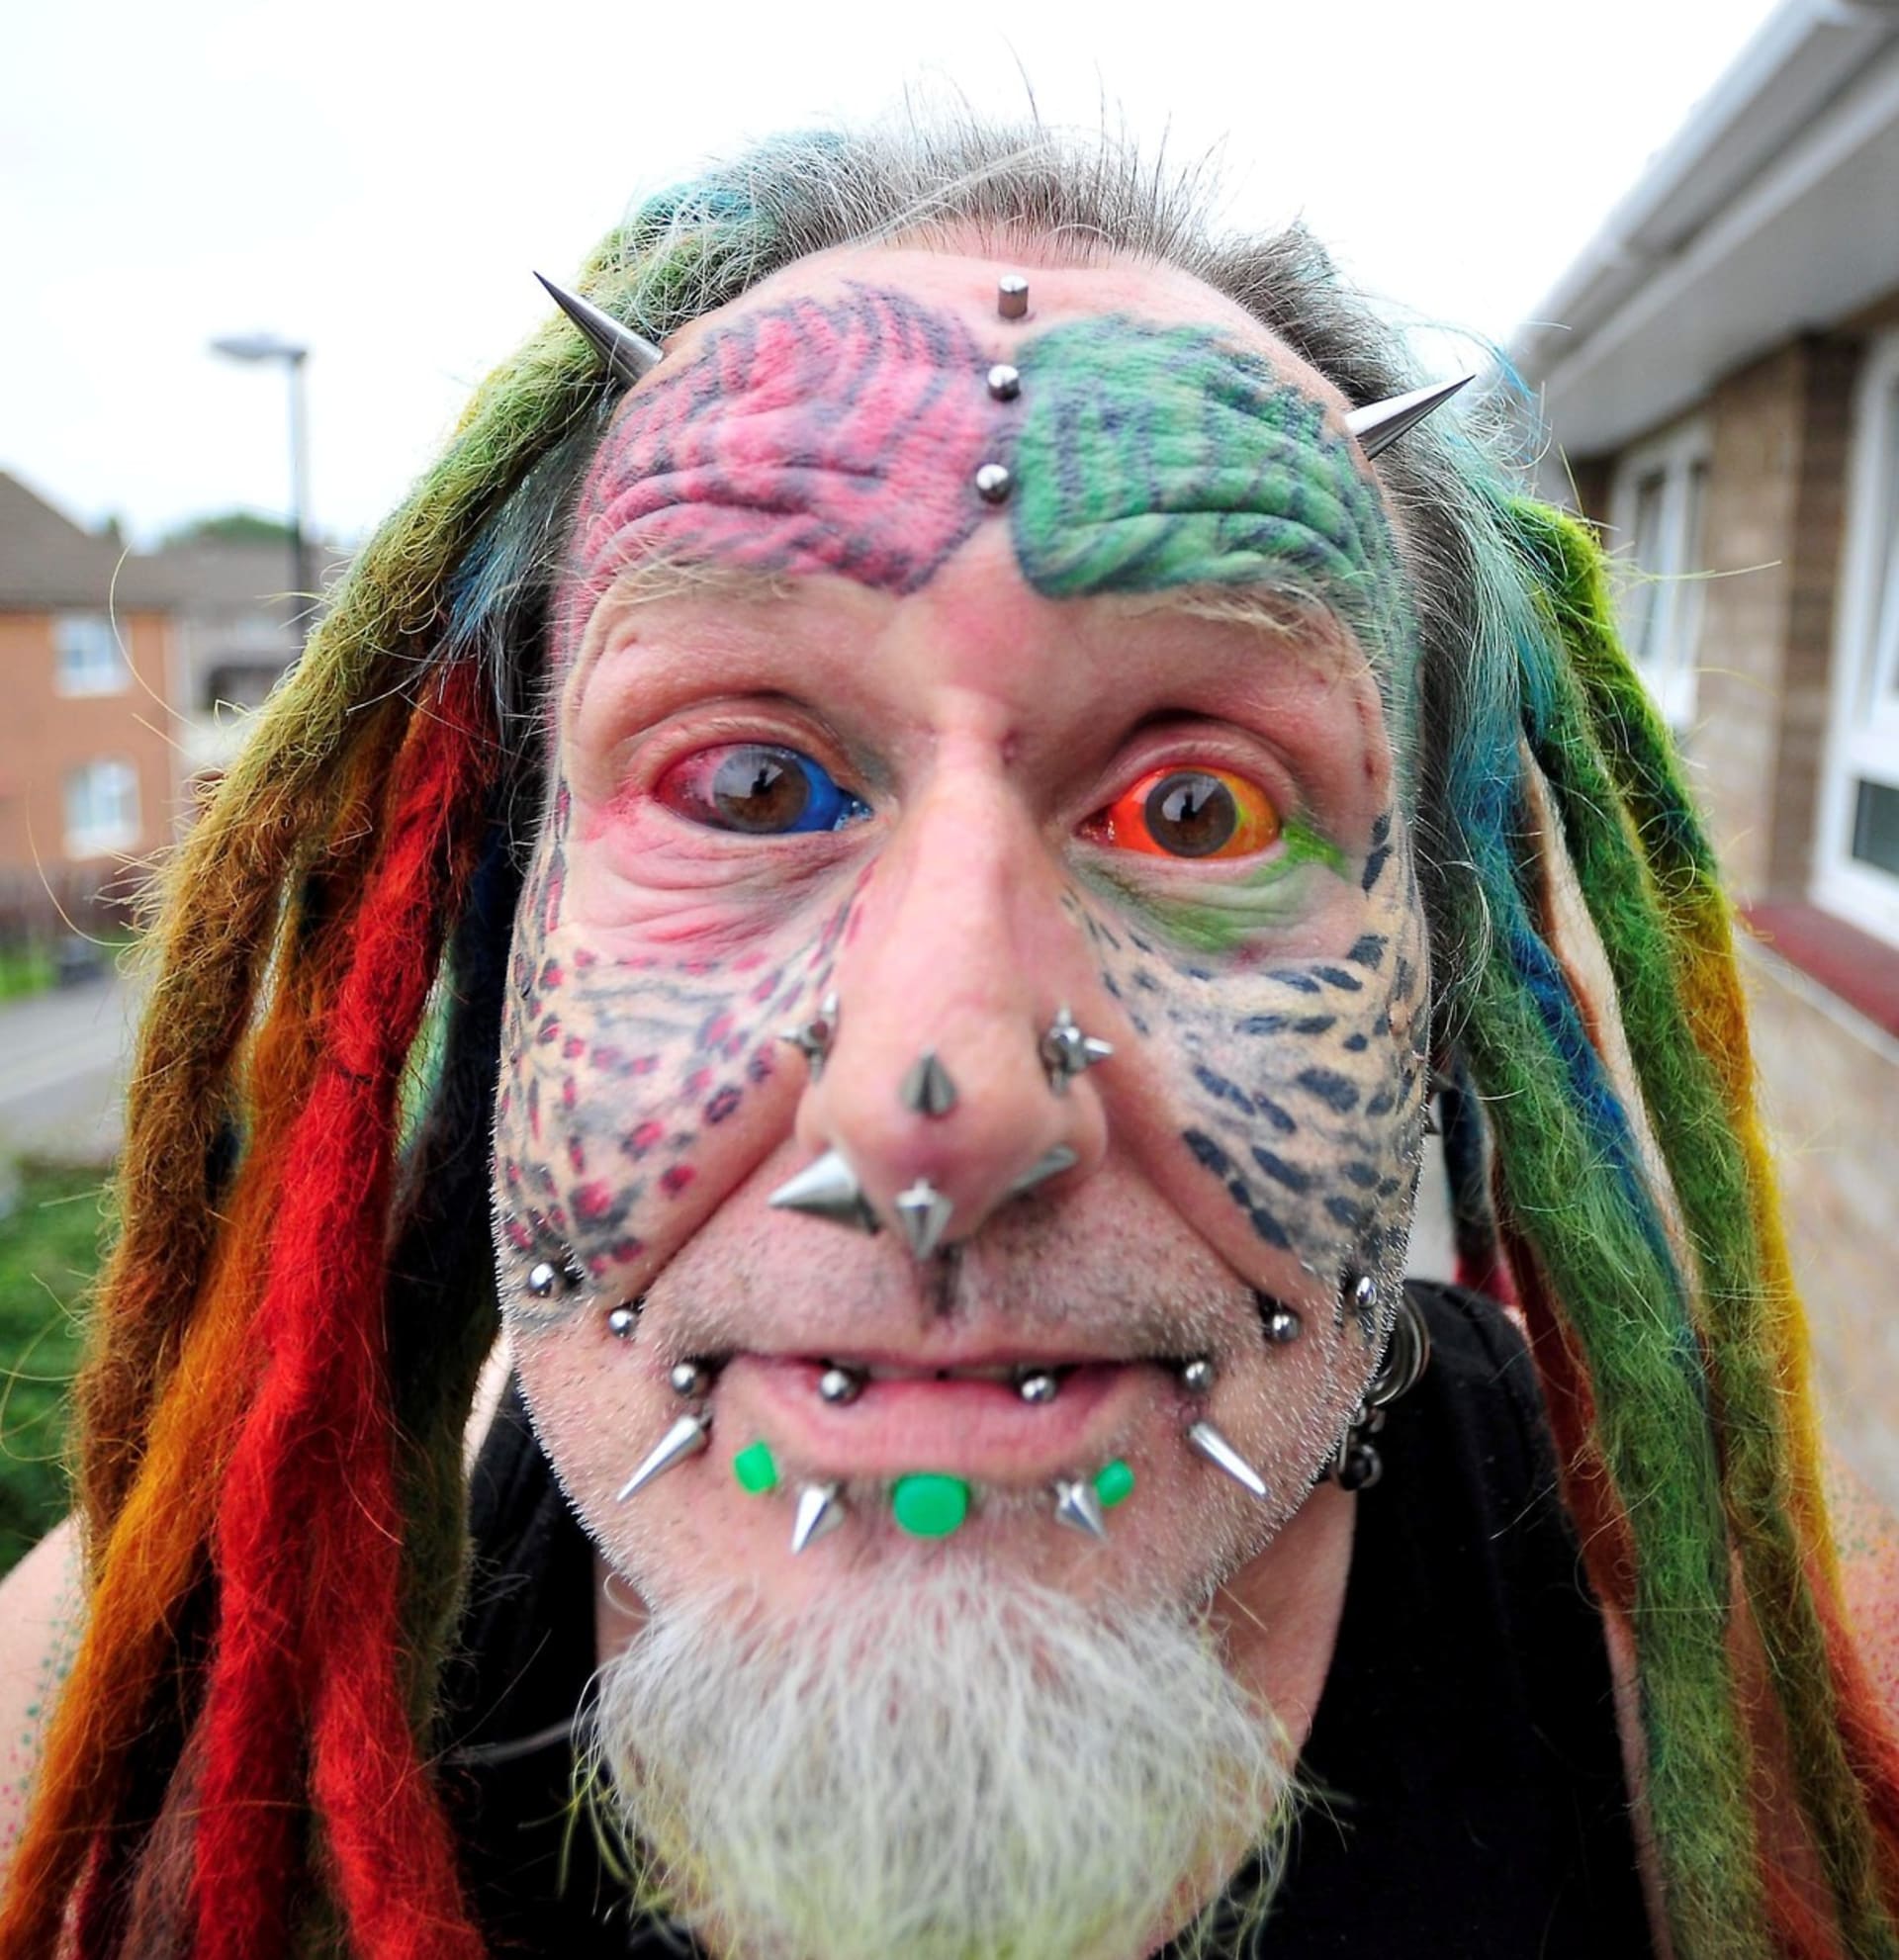 Parrot Man - barevné inkoustové injekce v očích, rozdělený jazyk, podkožní implantáty, tetování, piercingy.